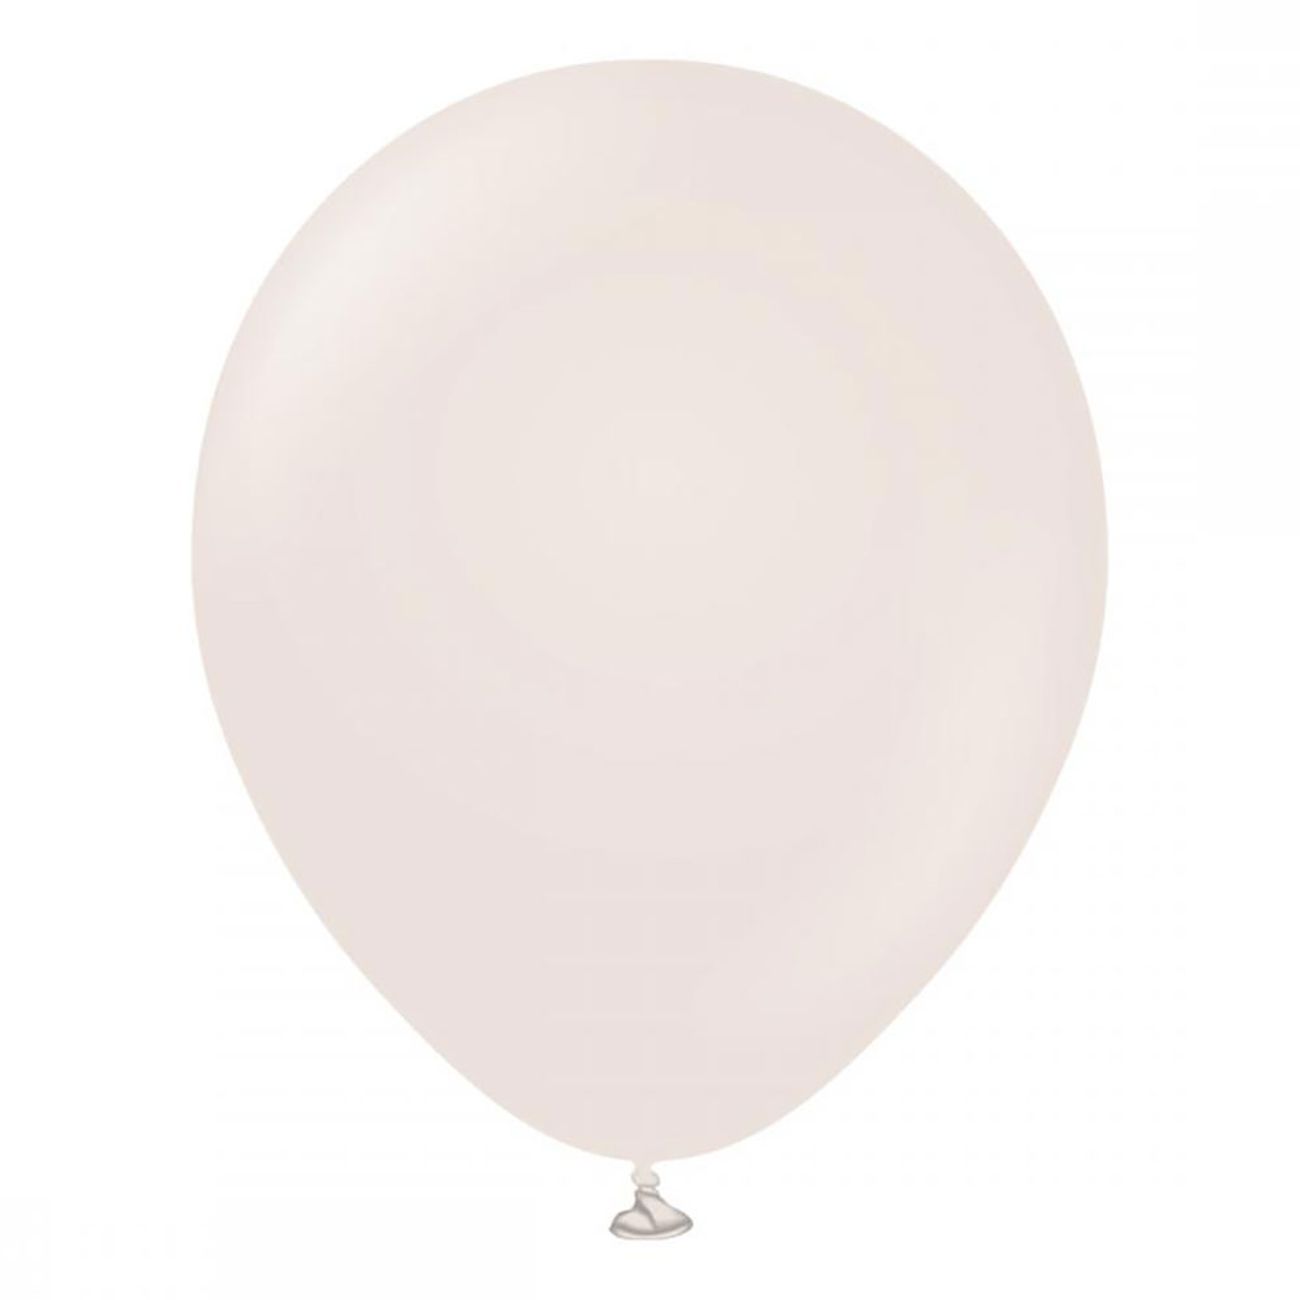 latexballonger-white-sand-45-cm-25-pack-82403-1